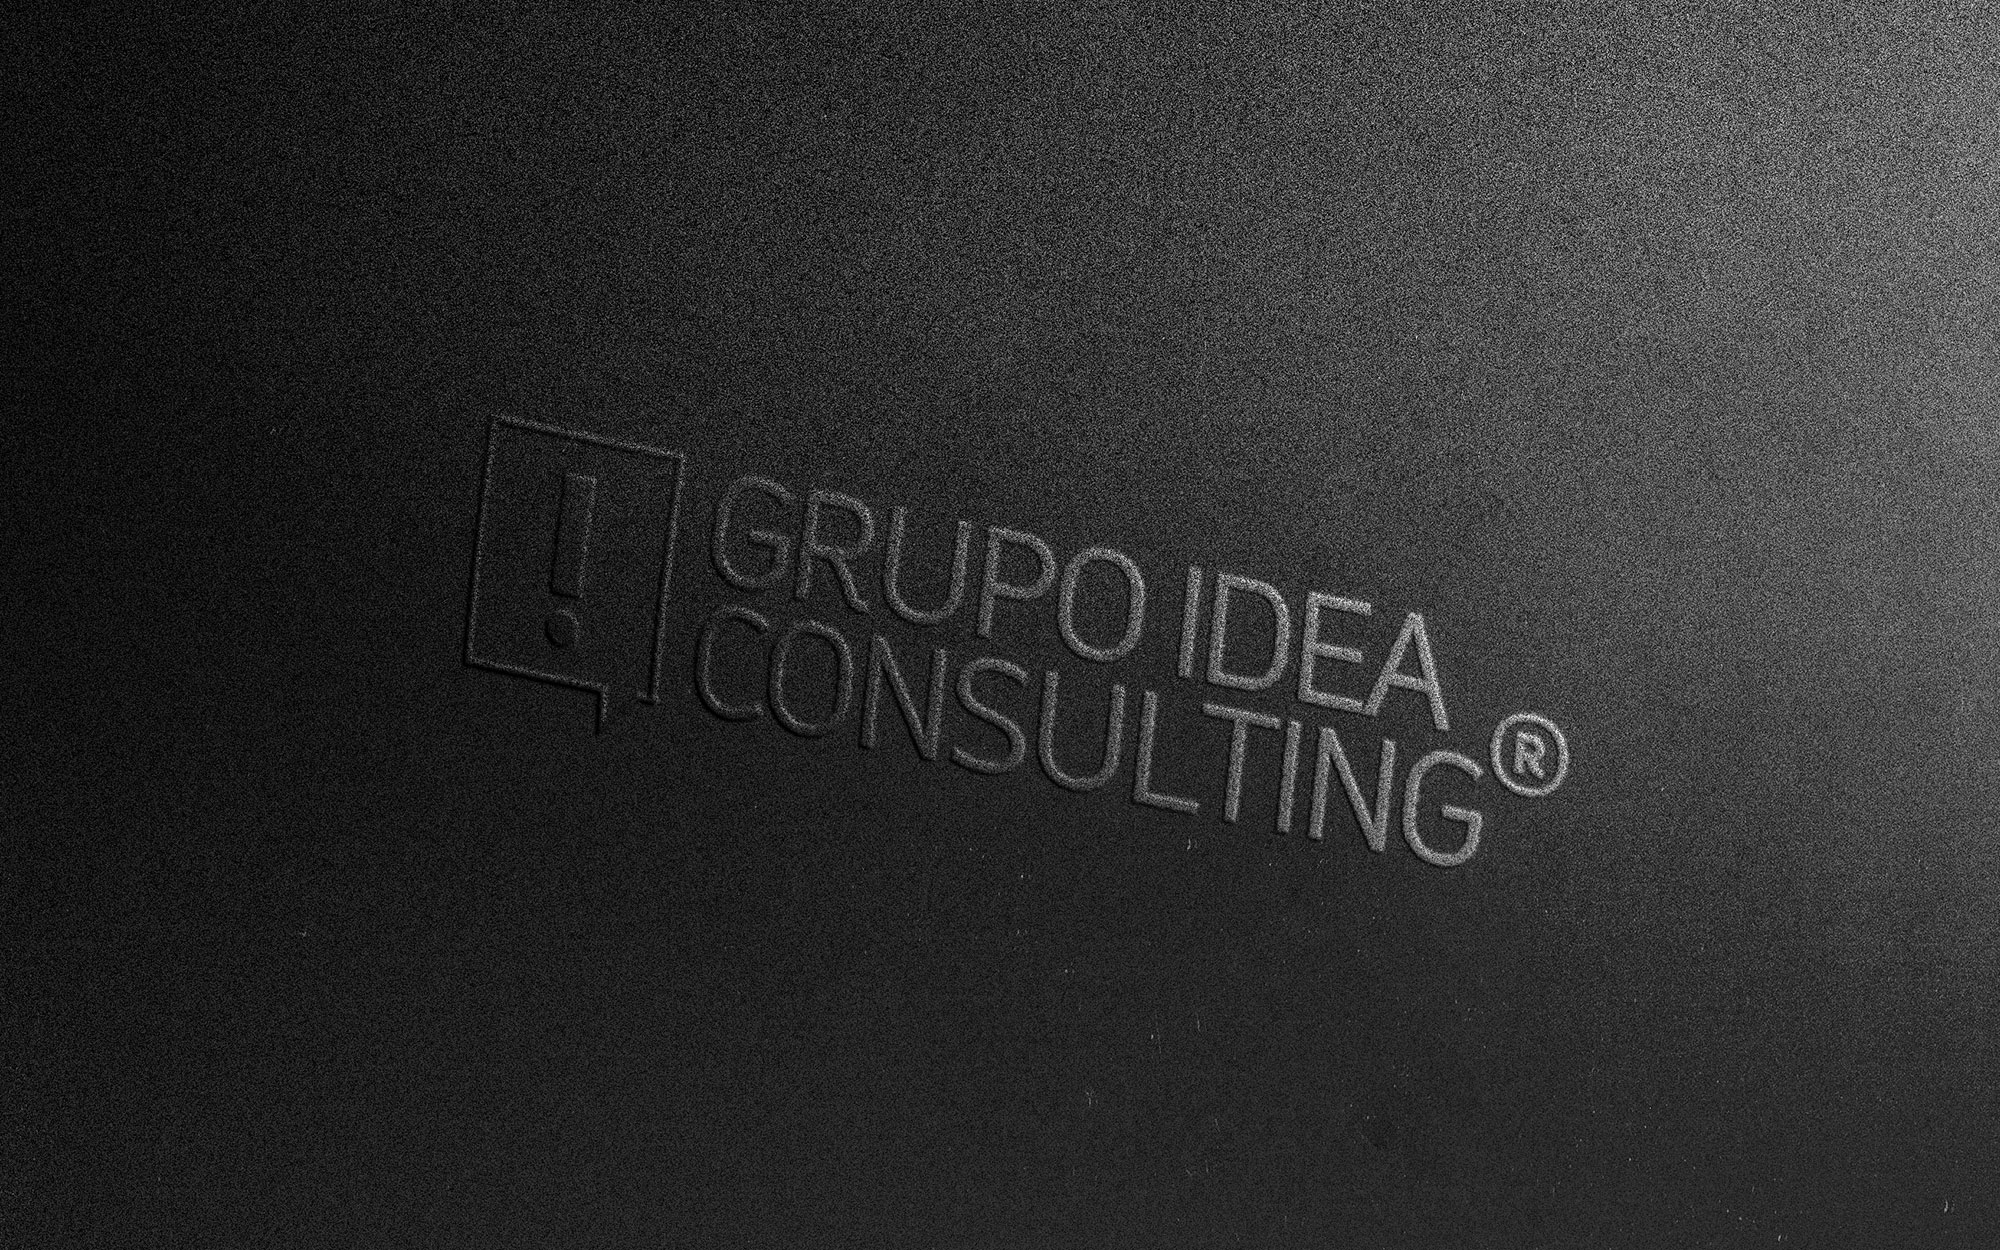 Grupo Idea Consulting. Agencia de publicidad y comunicación integral. La Paz, Baja California Sur, Mexico.